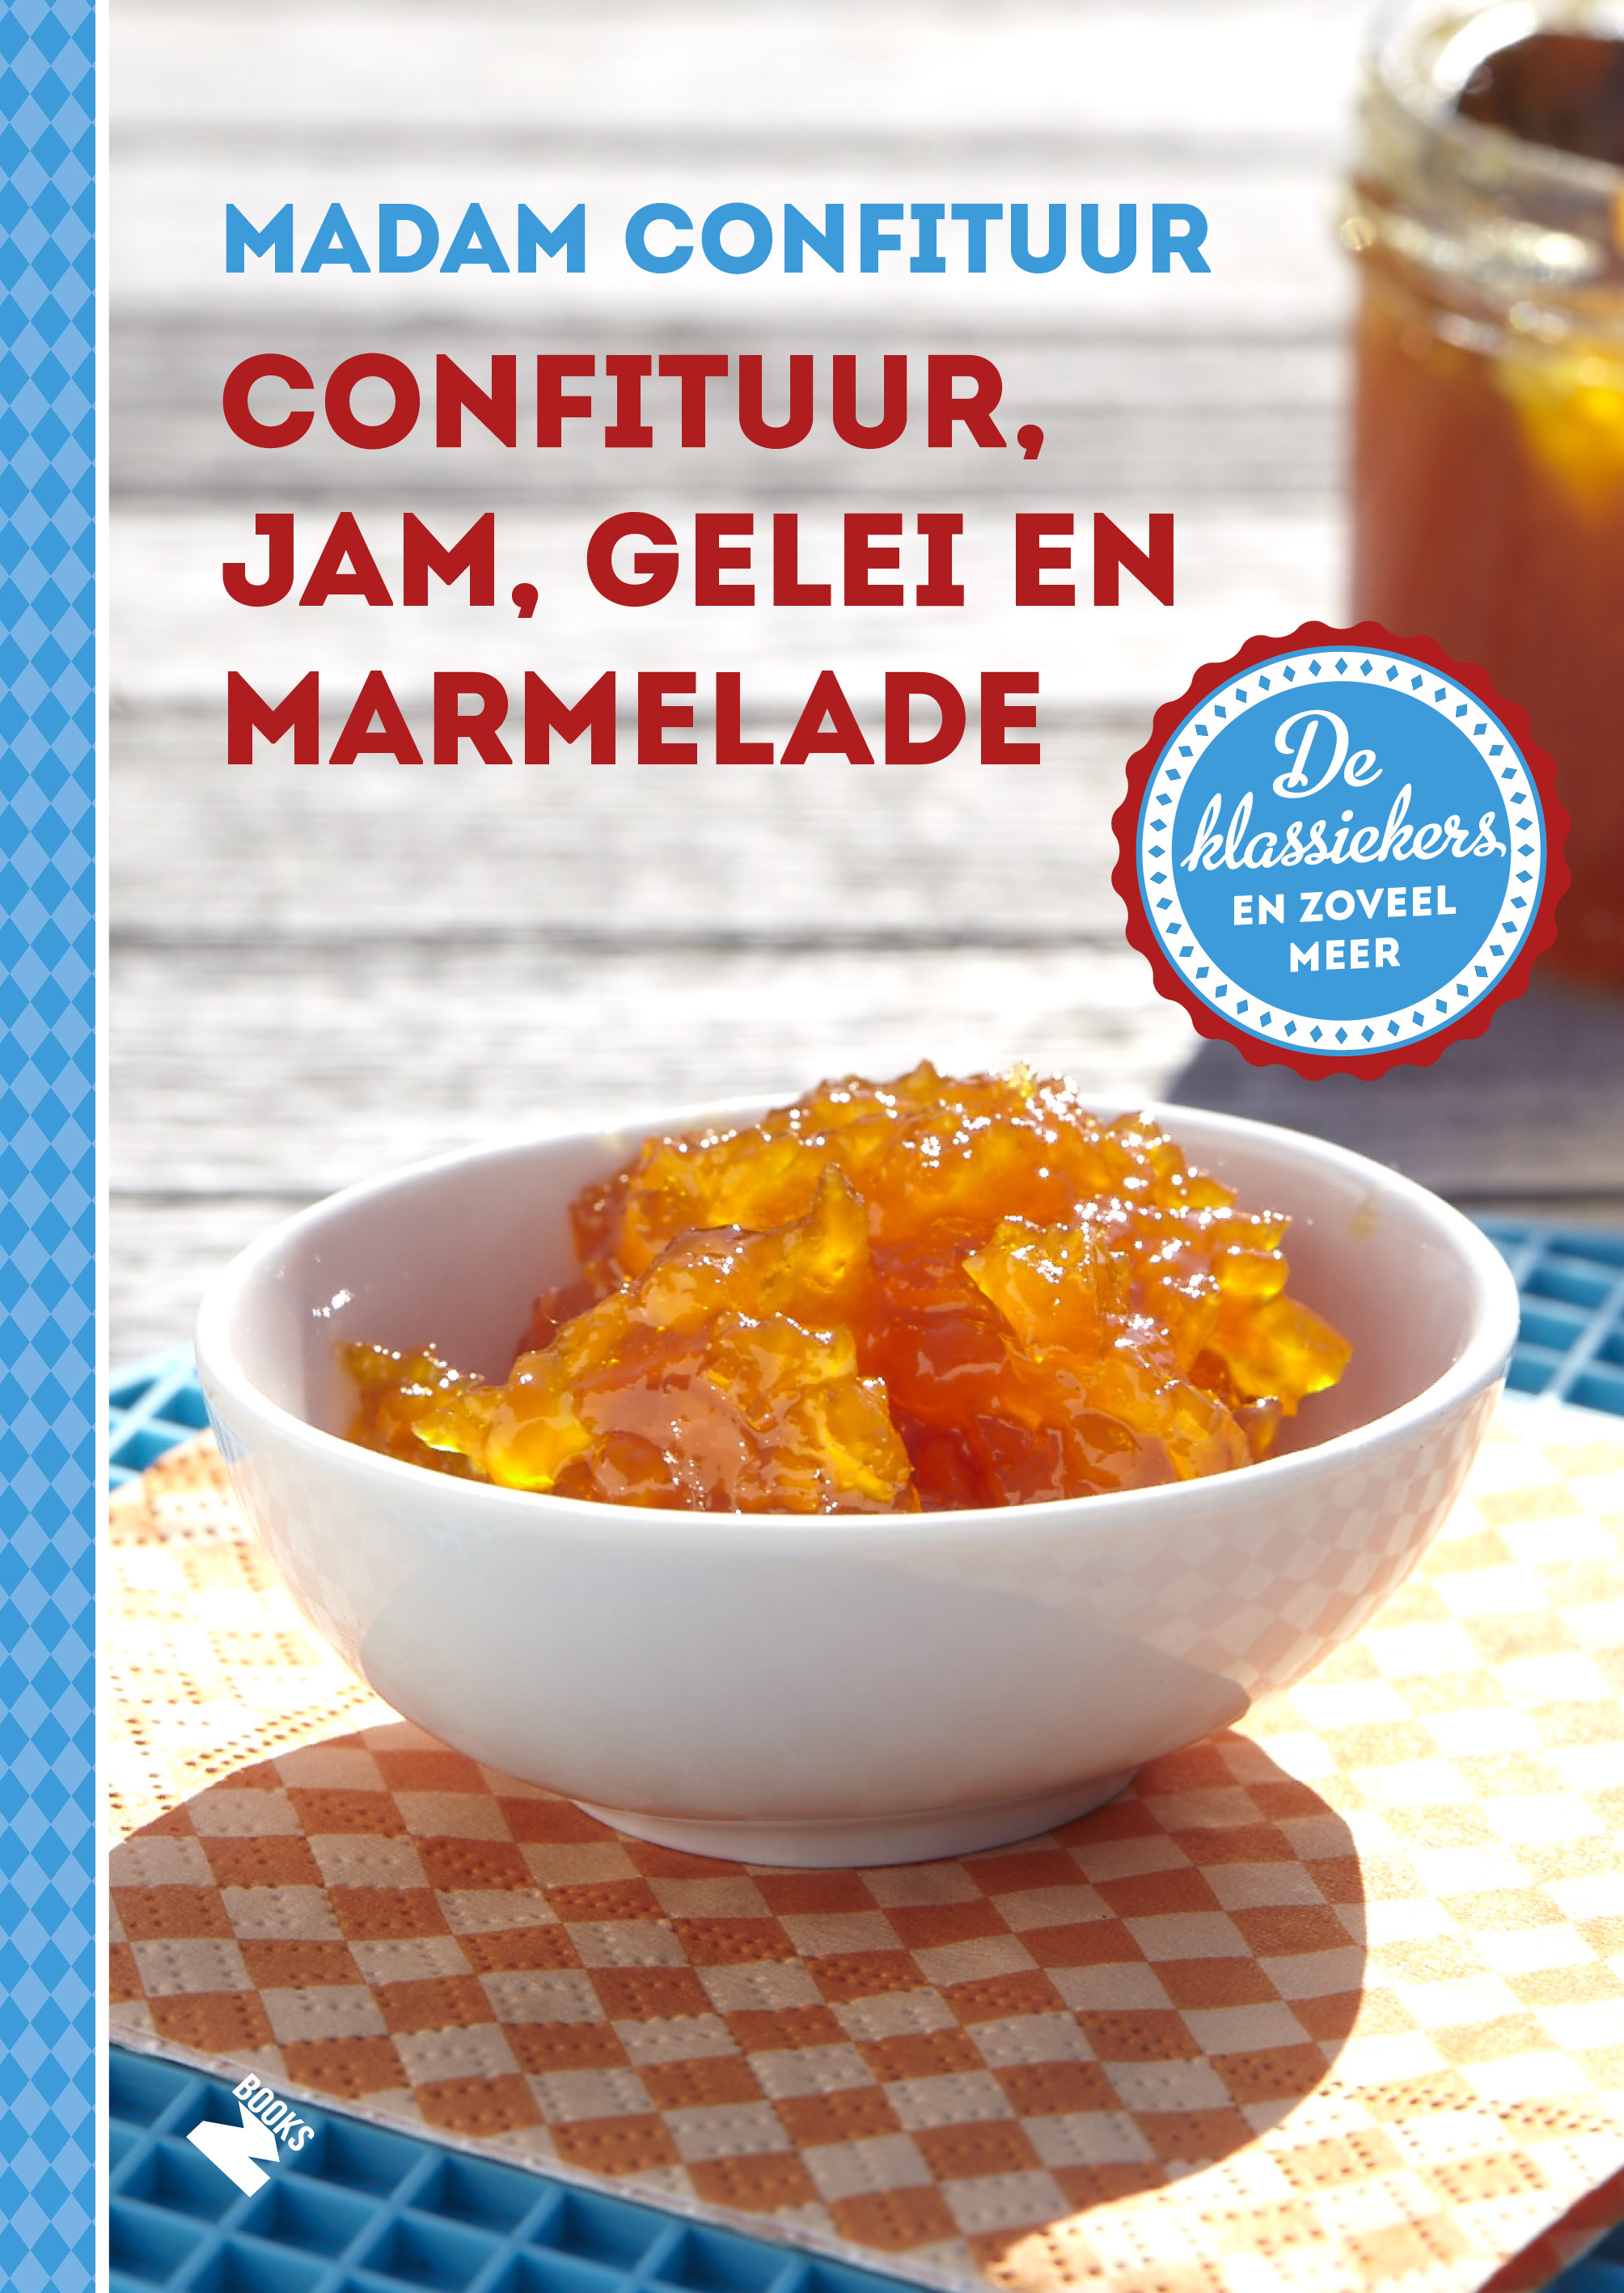 Confituurboek: Confituur, jam, gelei en marmelade